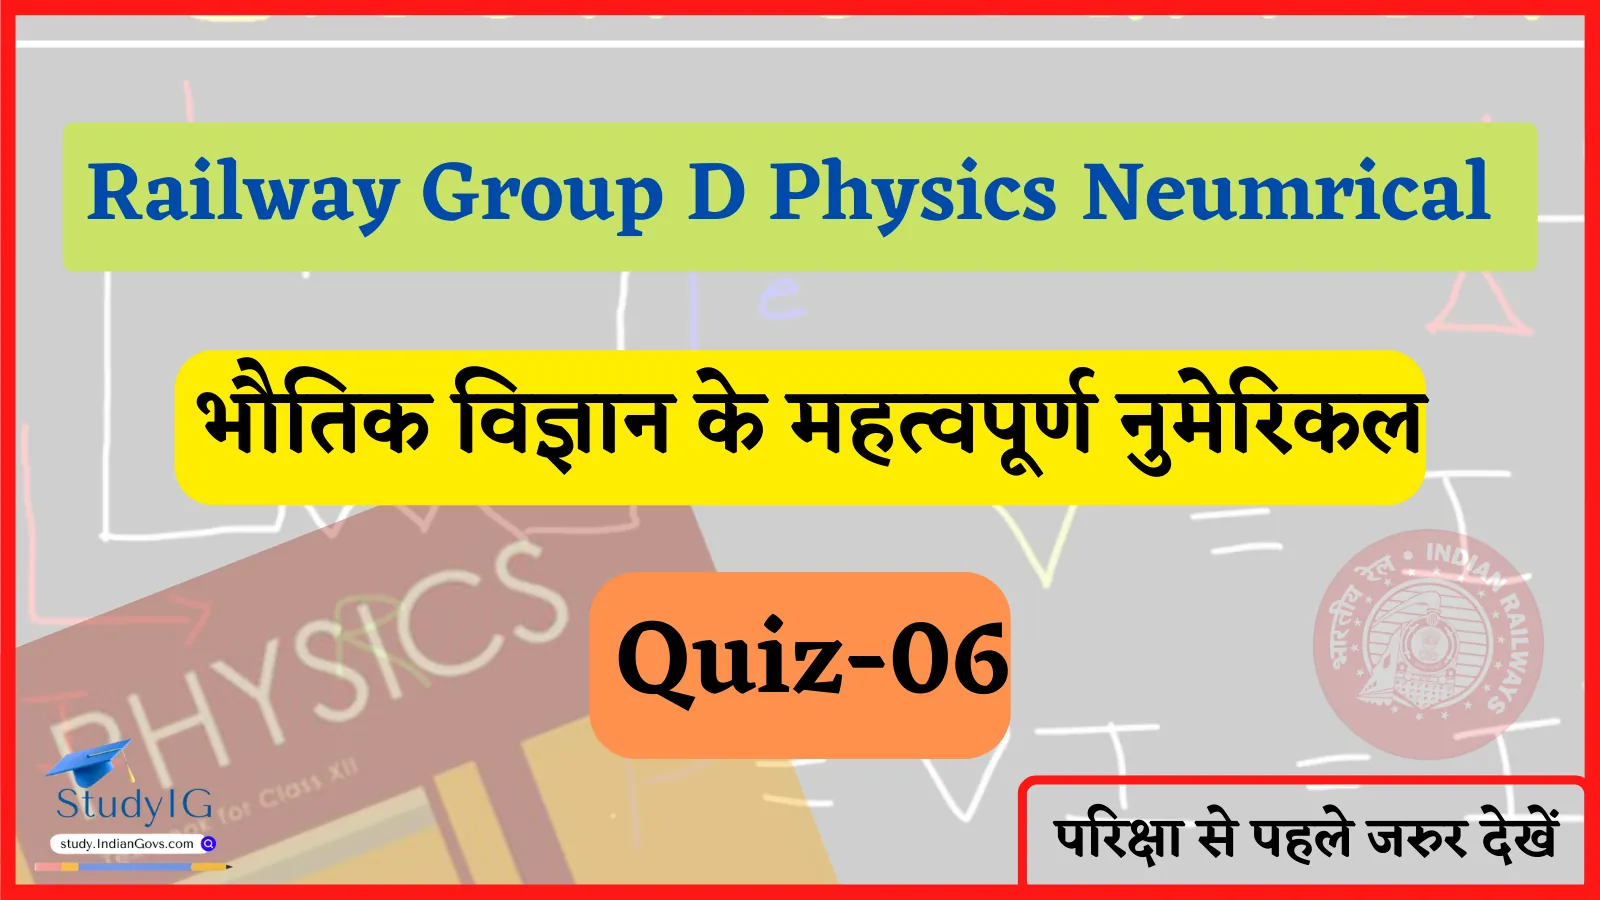 Railway Group D Physics Numerical Quiz- 06